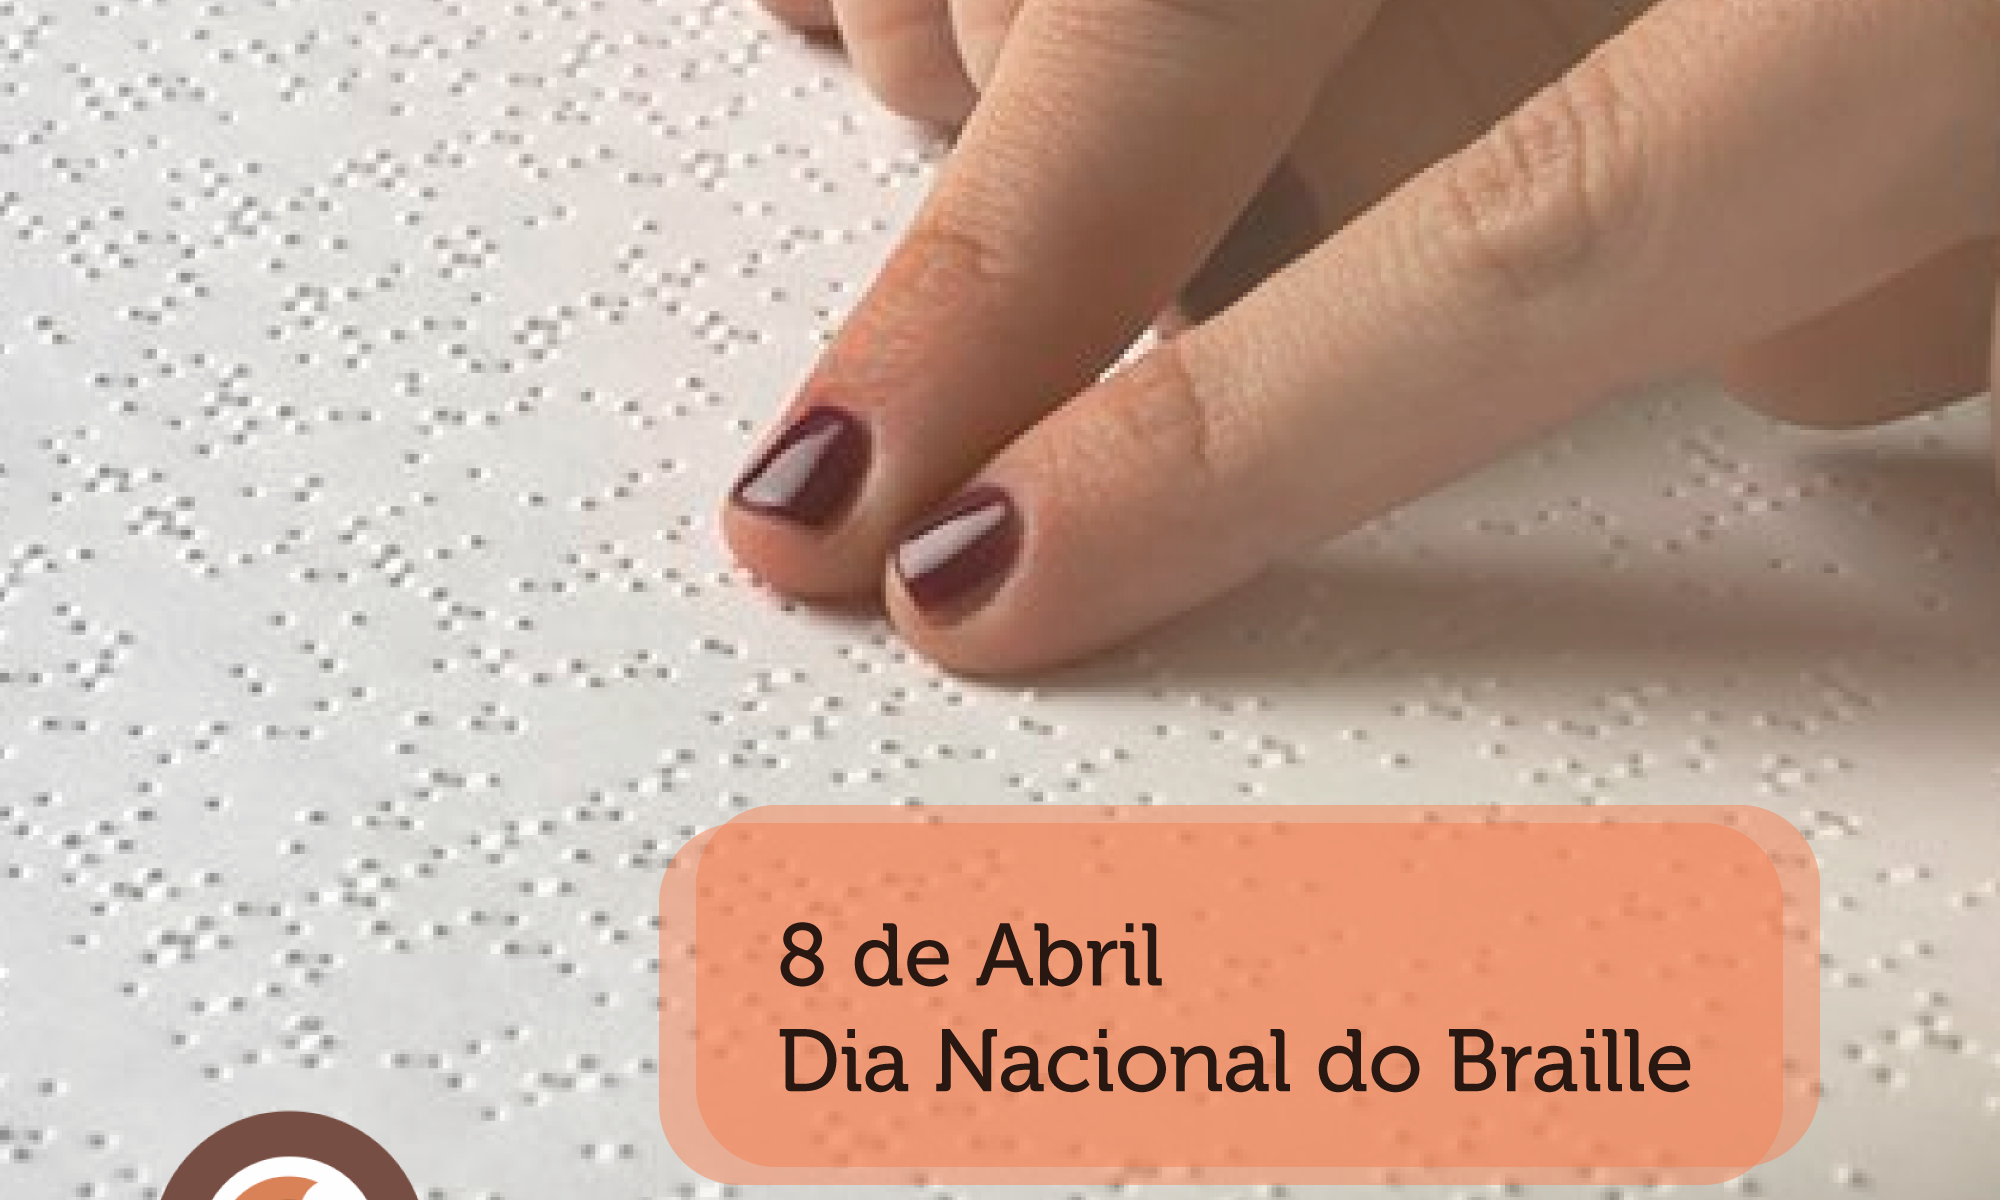 #PraCegoVer imagem de uma mão lendo um material em Braille, está escrito:"8 de Abril Dia Nacional do Braille" há a #abrilmarrom e as logos da Retina Brasil e da Bayer